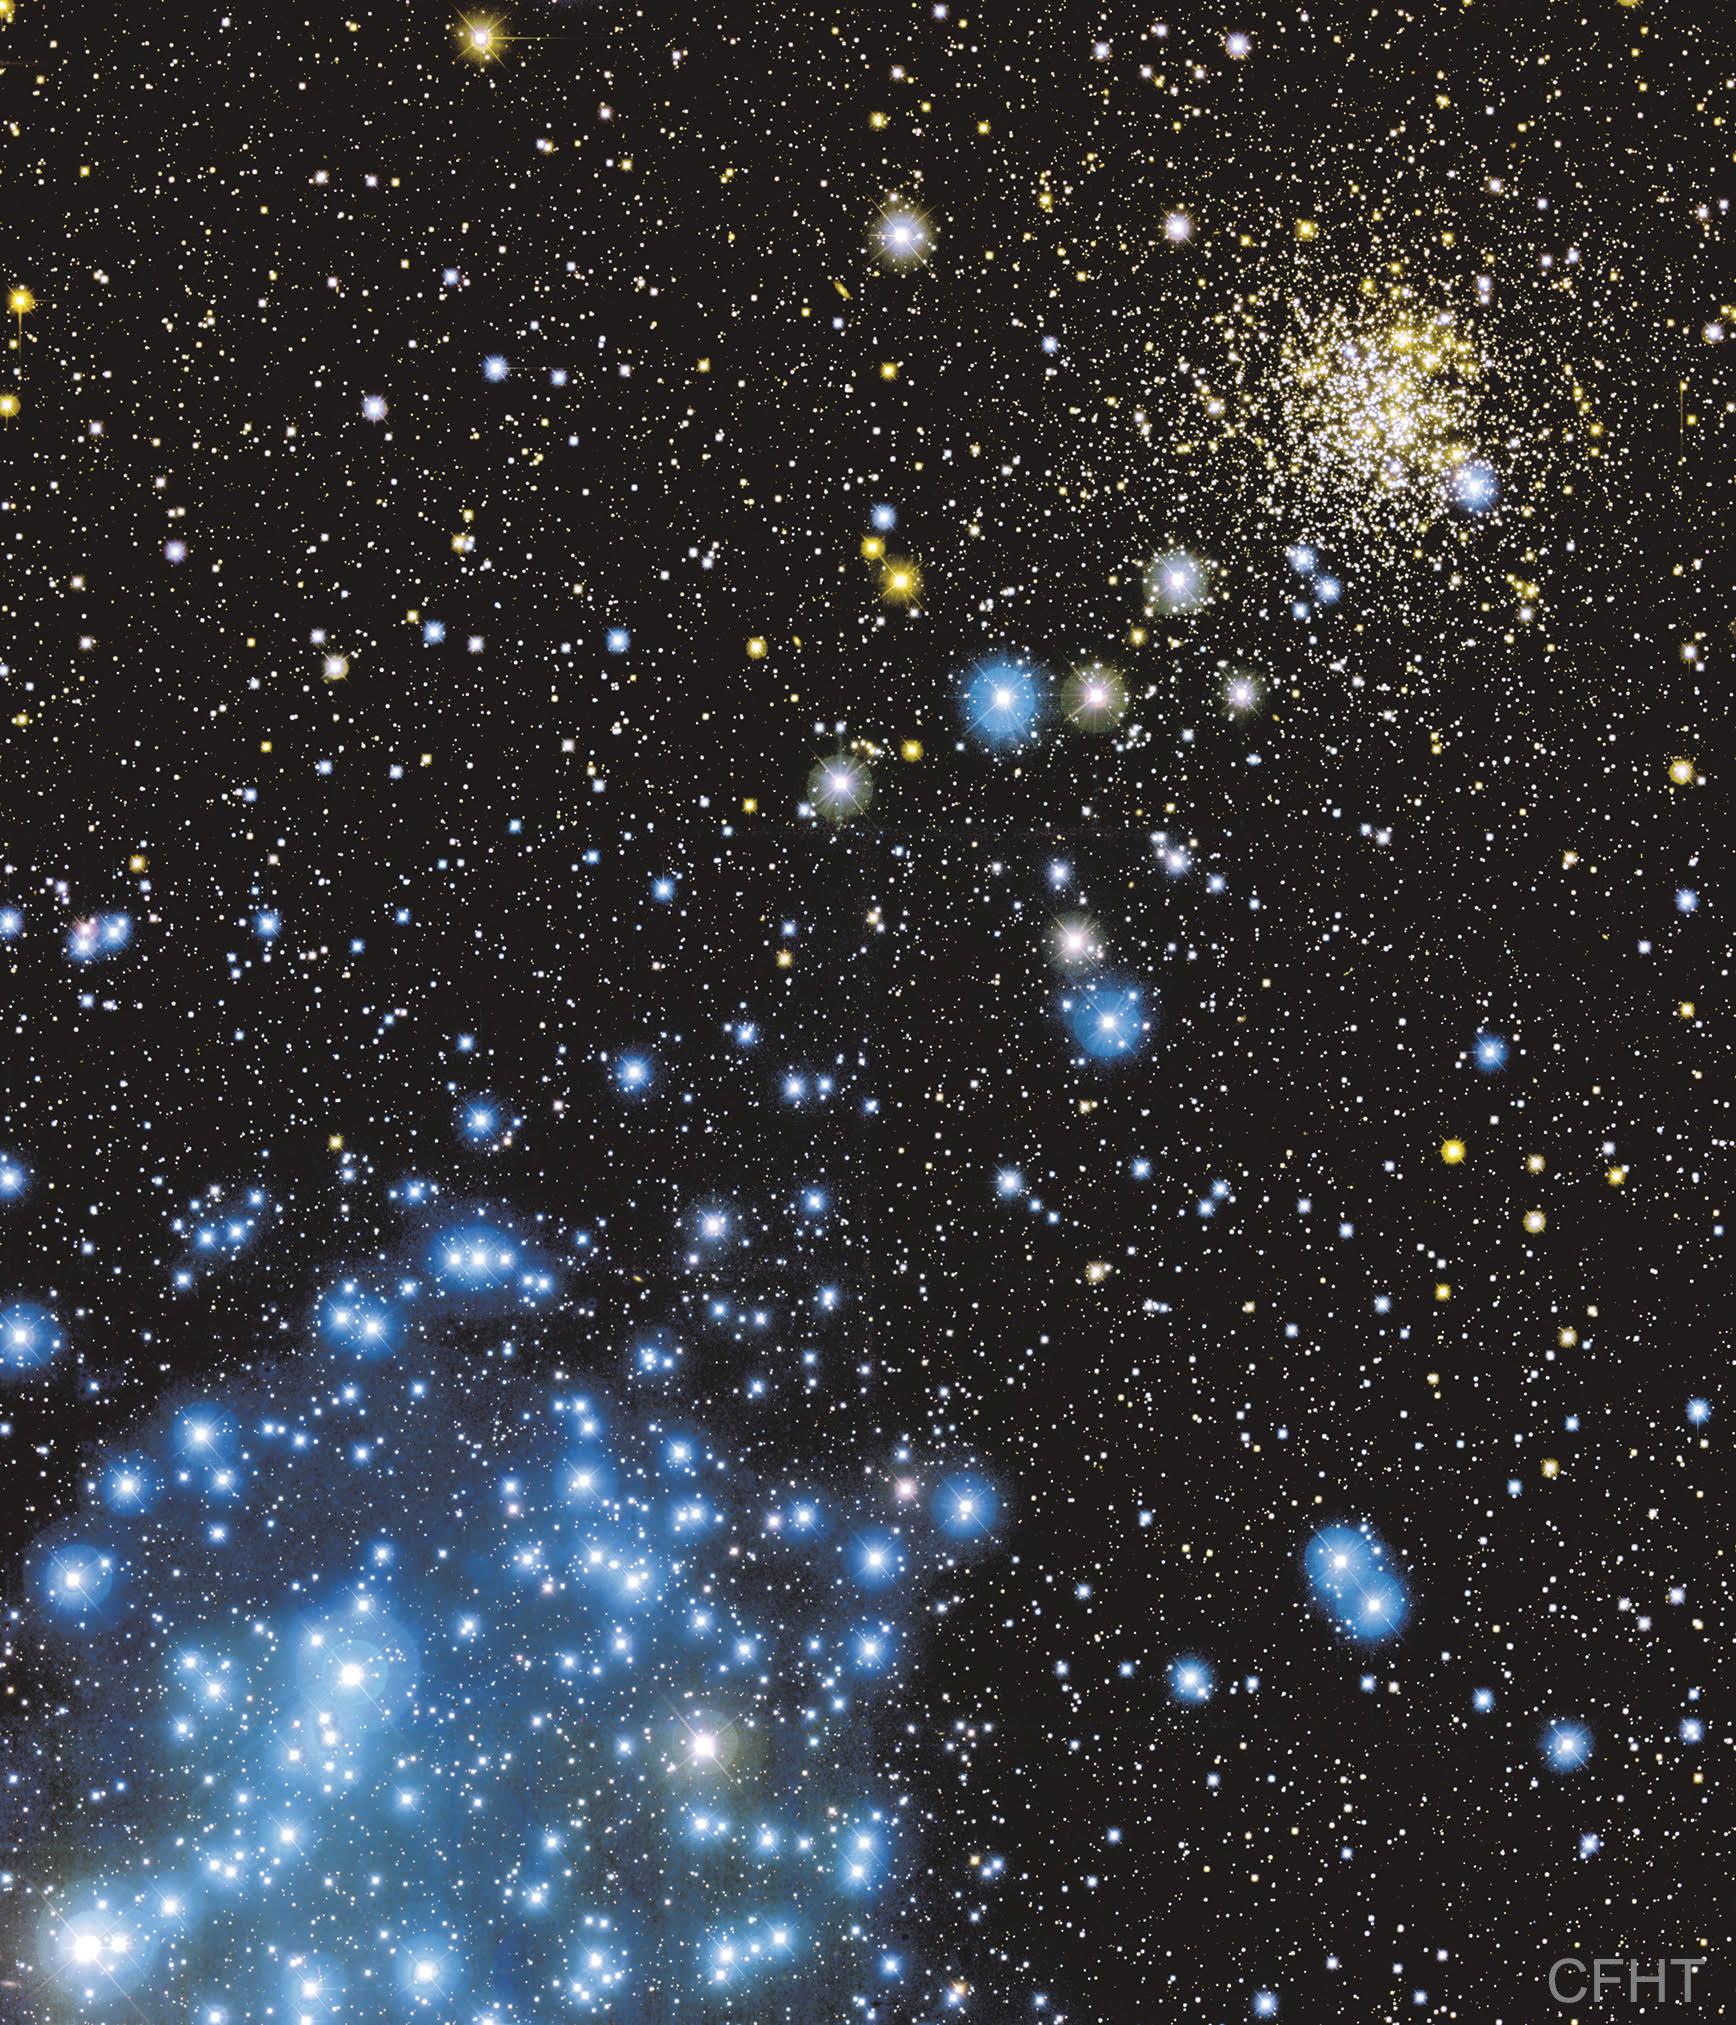 فضاء عميق مرصّع بالنجوم يظهر فيه عنقودان نجميّان أصغرهما منظوريّاً في أعلى يمين الصورة نجومه صفراء متراصّة، والآخر الذي يبدو أكبر في أسفل يسار الصورة نجومهُ زرقاءٌ متناثرة.